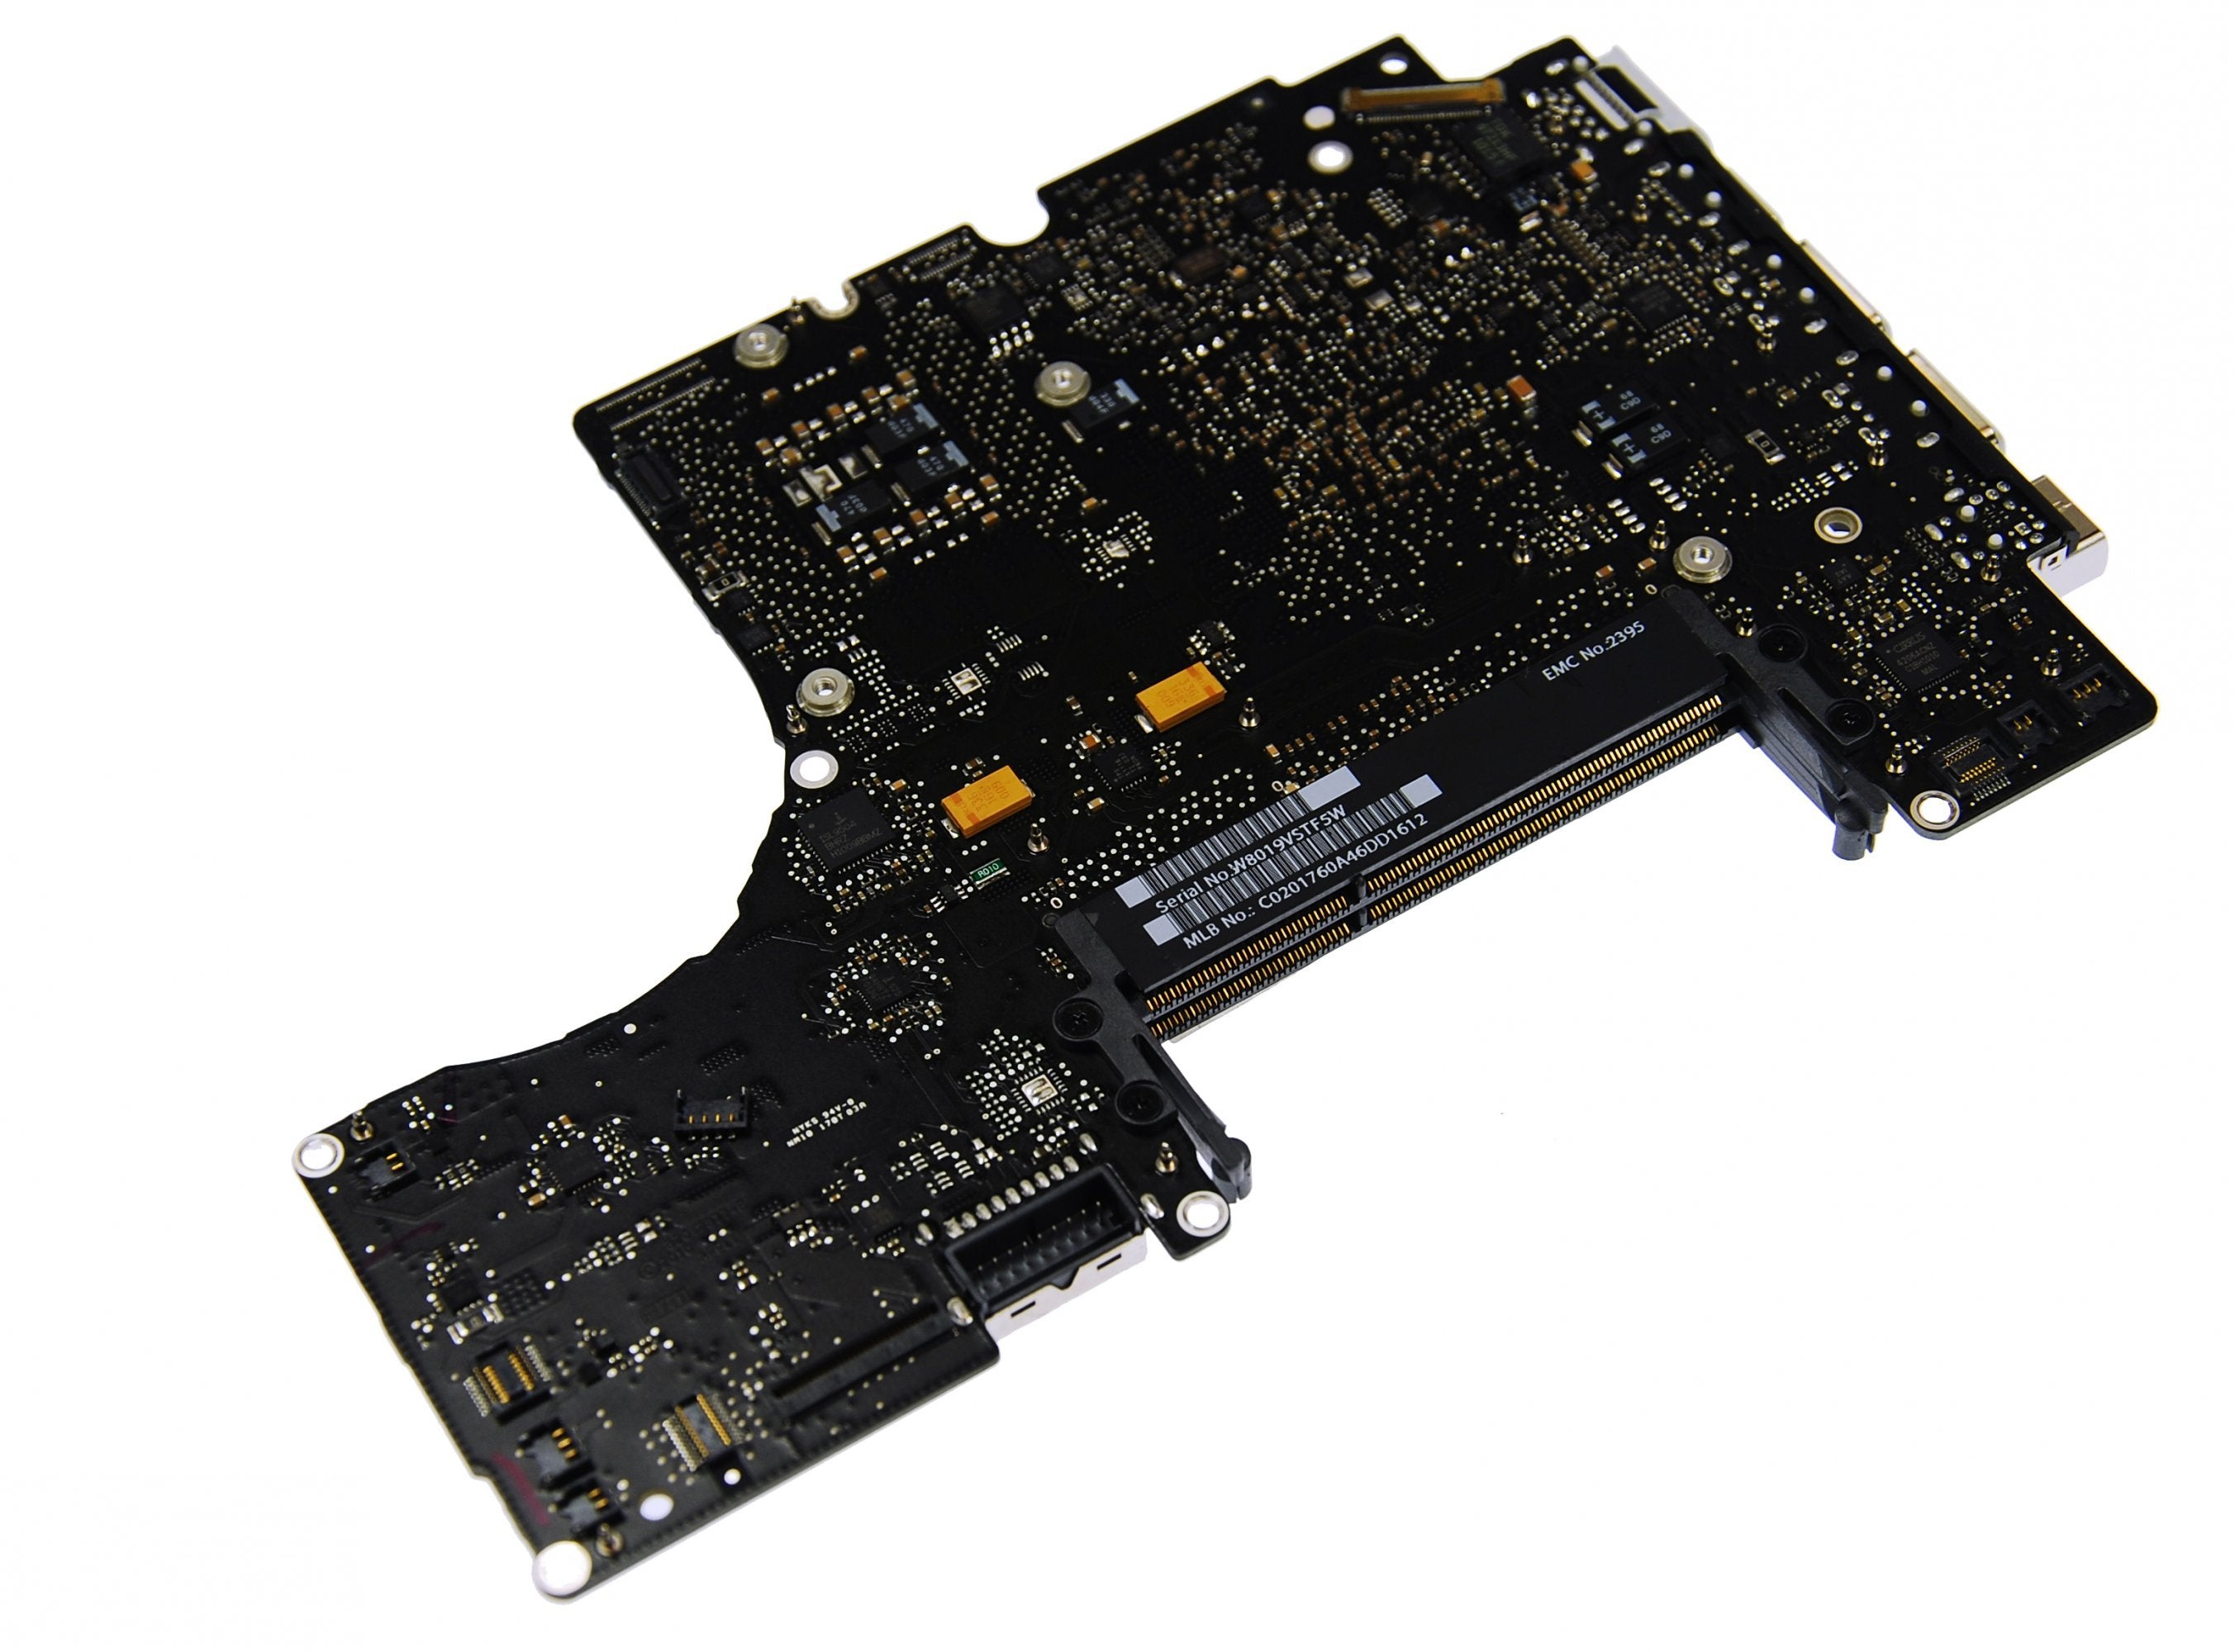 MacBook Unibody (A1342) 2.4 GHz Logic Board